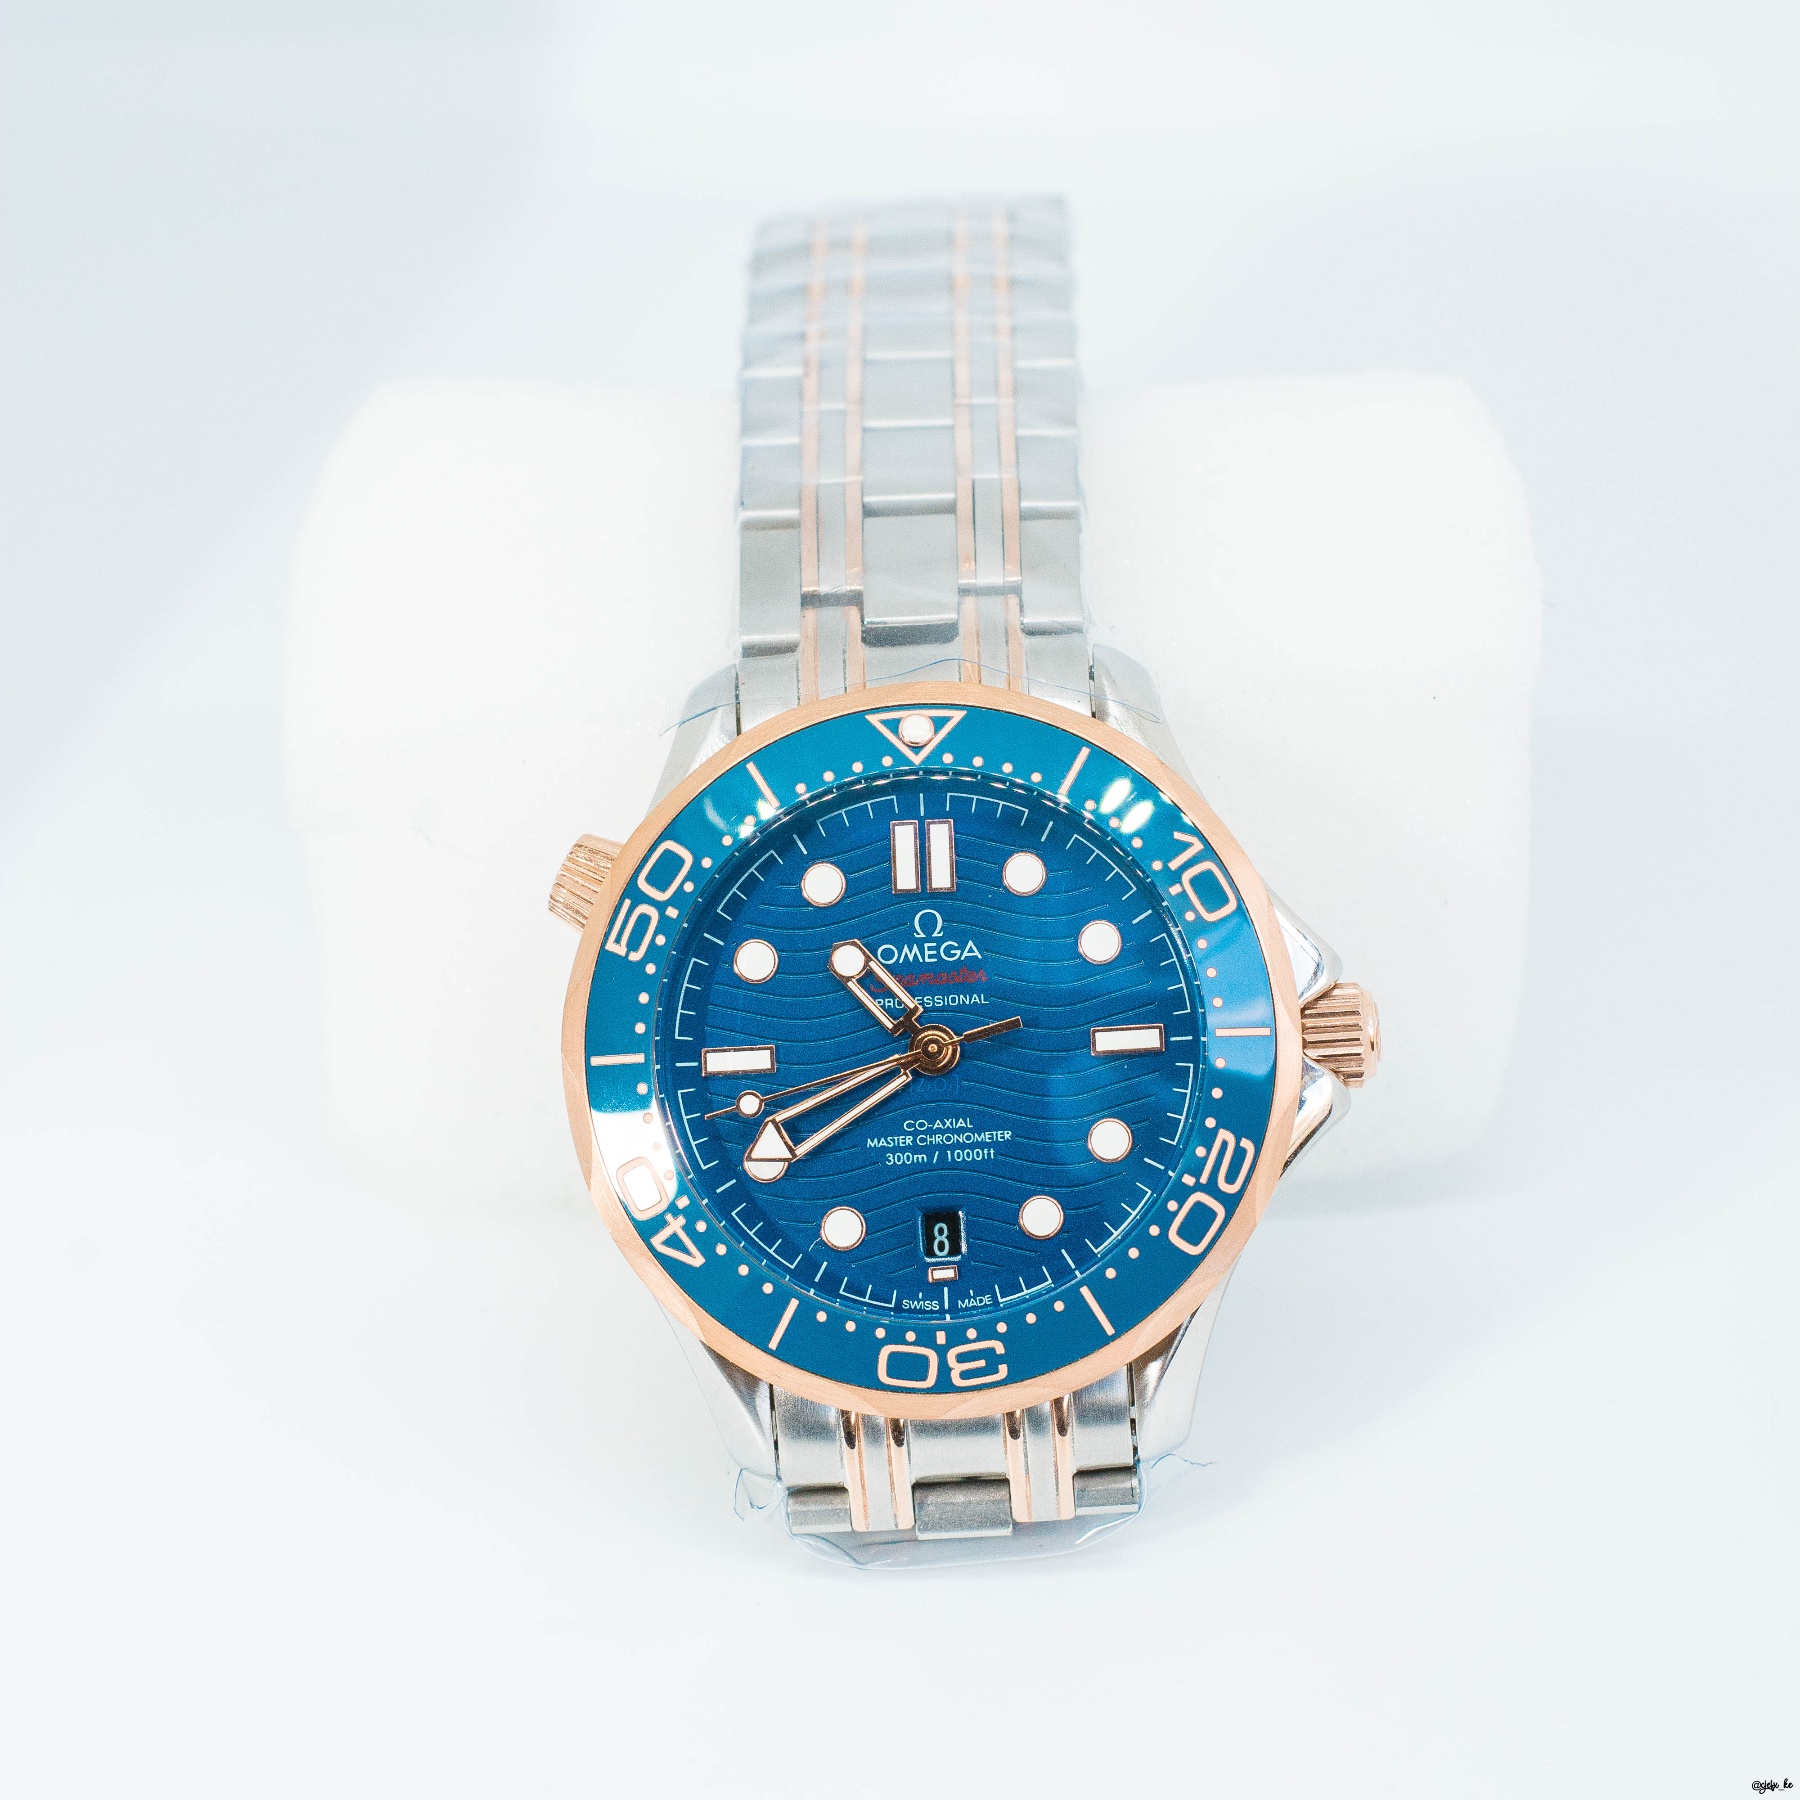 Omega Sea master Diver 300 m 42 mm Blue Dial Two-Tone Men's Bracelet Watch for sale in Kenya